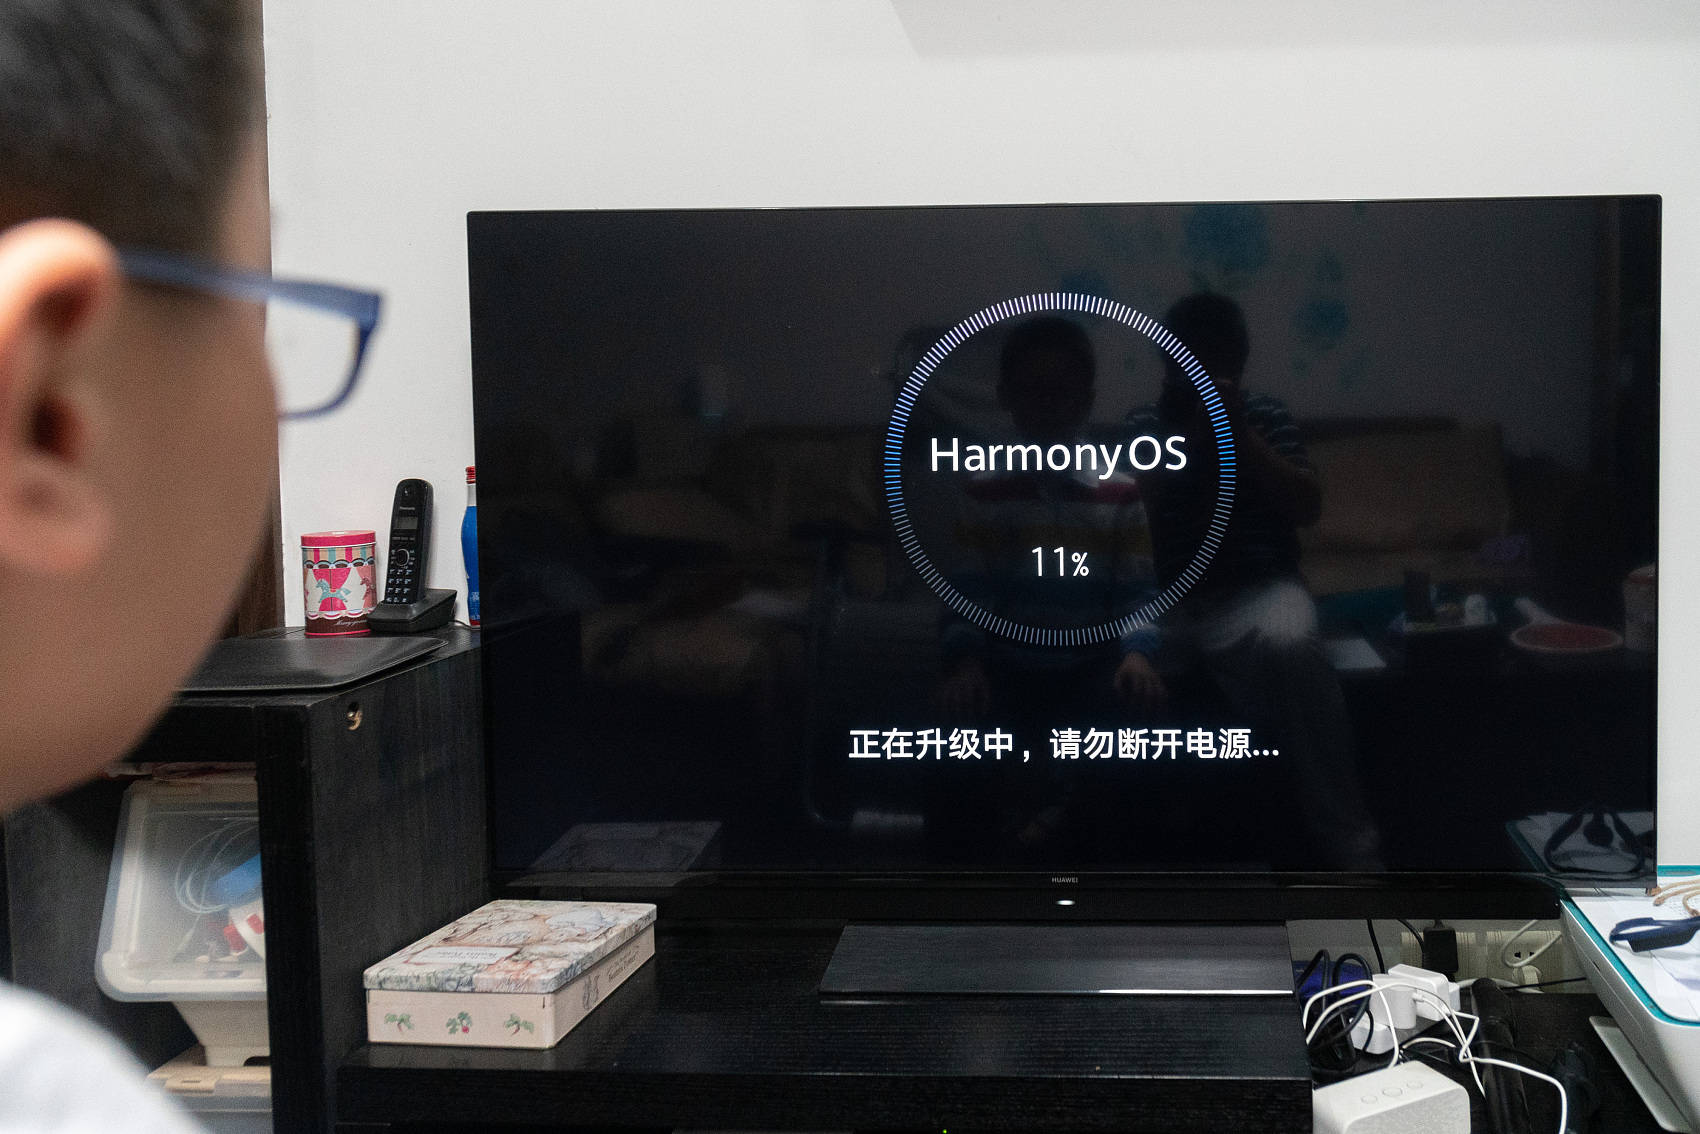 服务|华为发布HarmonyOS元服务 今年力保2亿台手机搭载鸿蒙系统